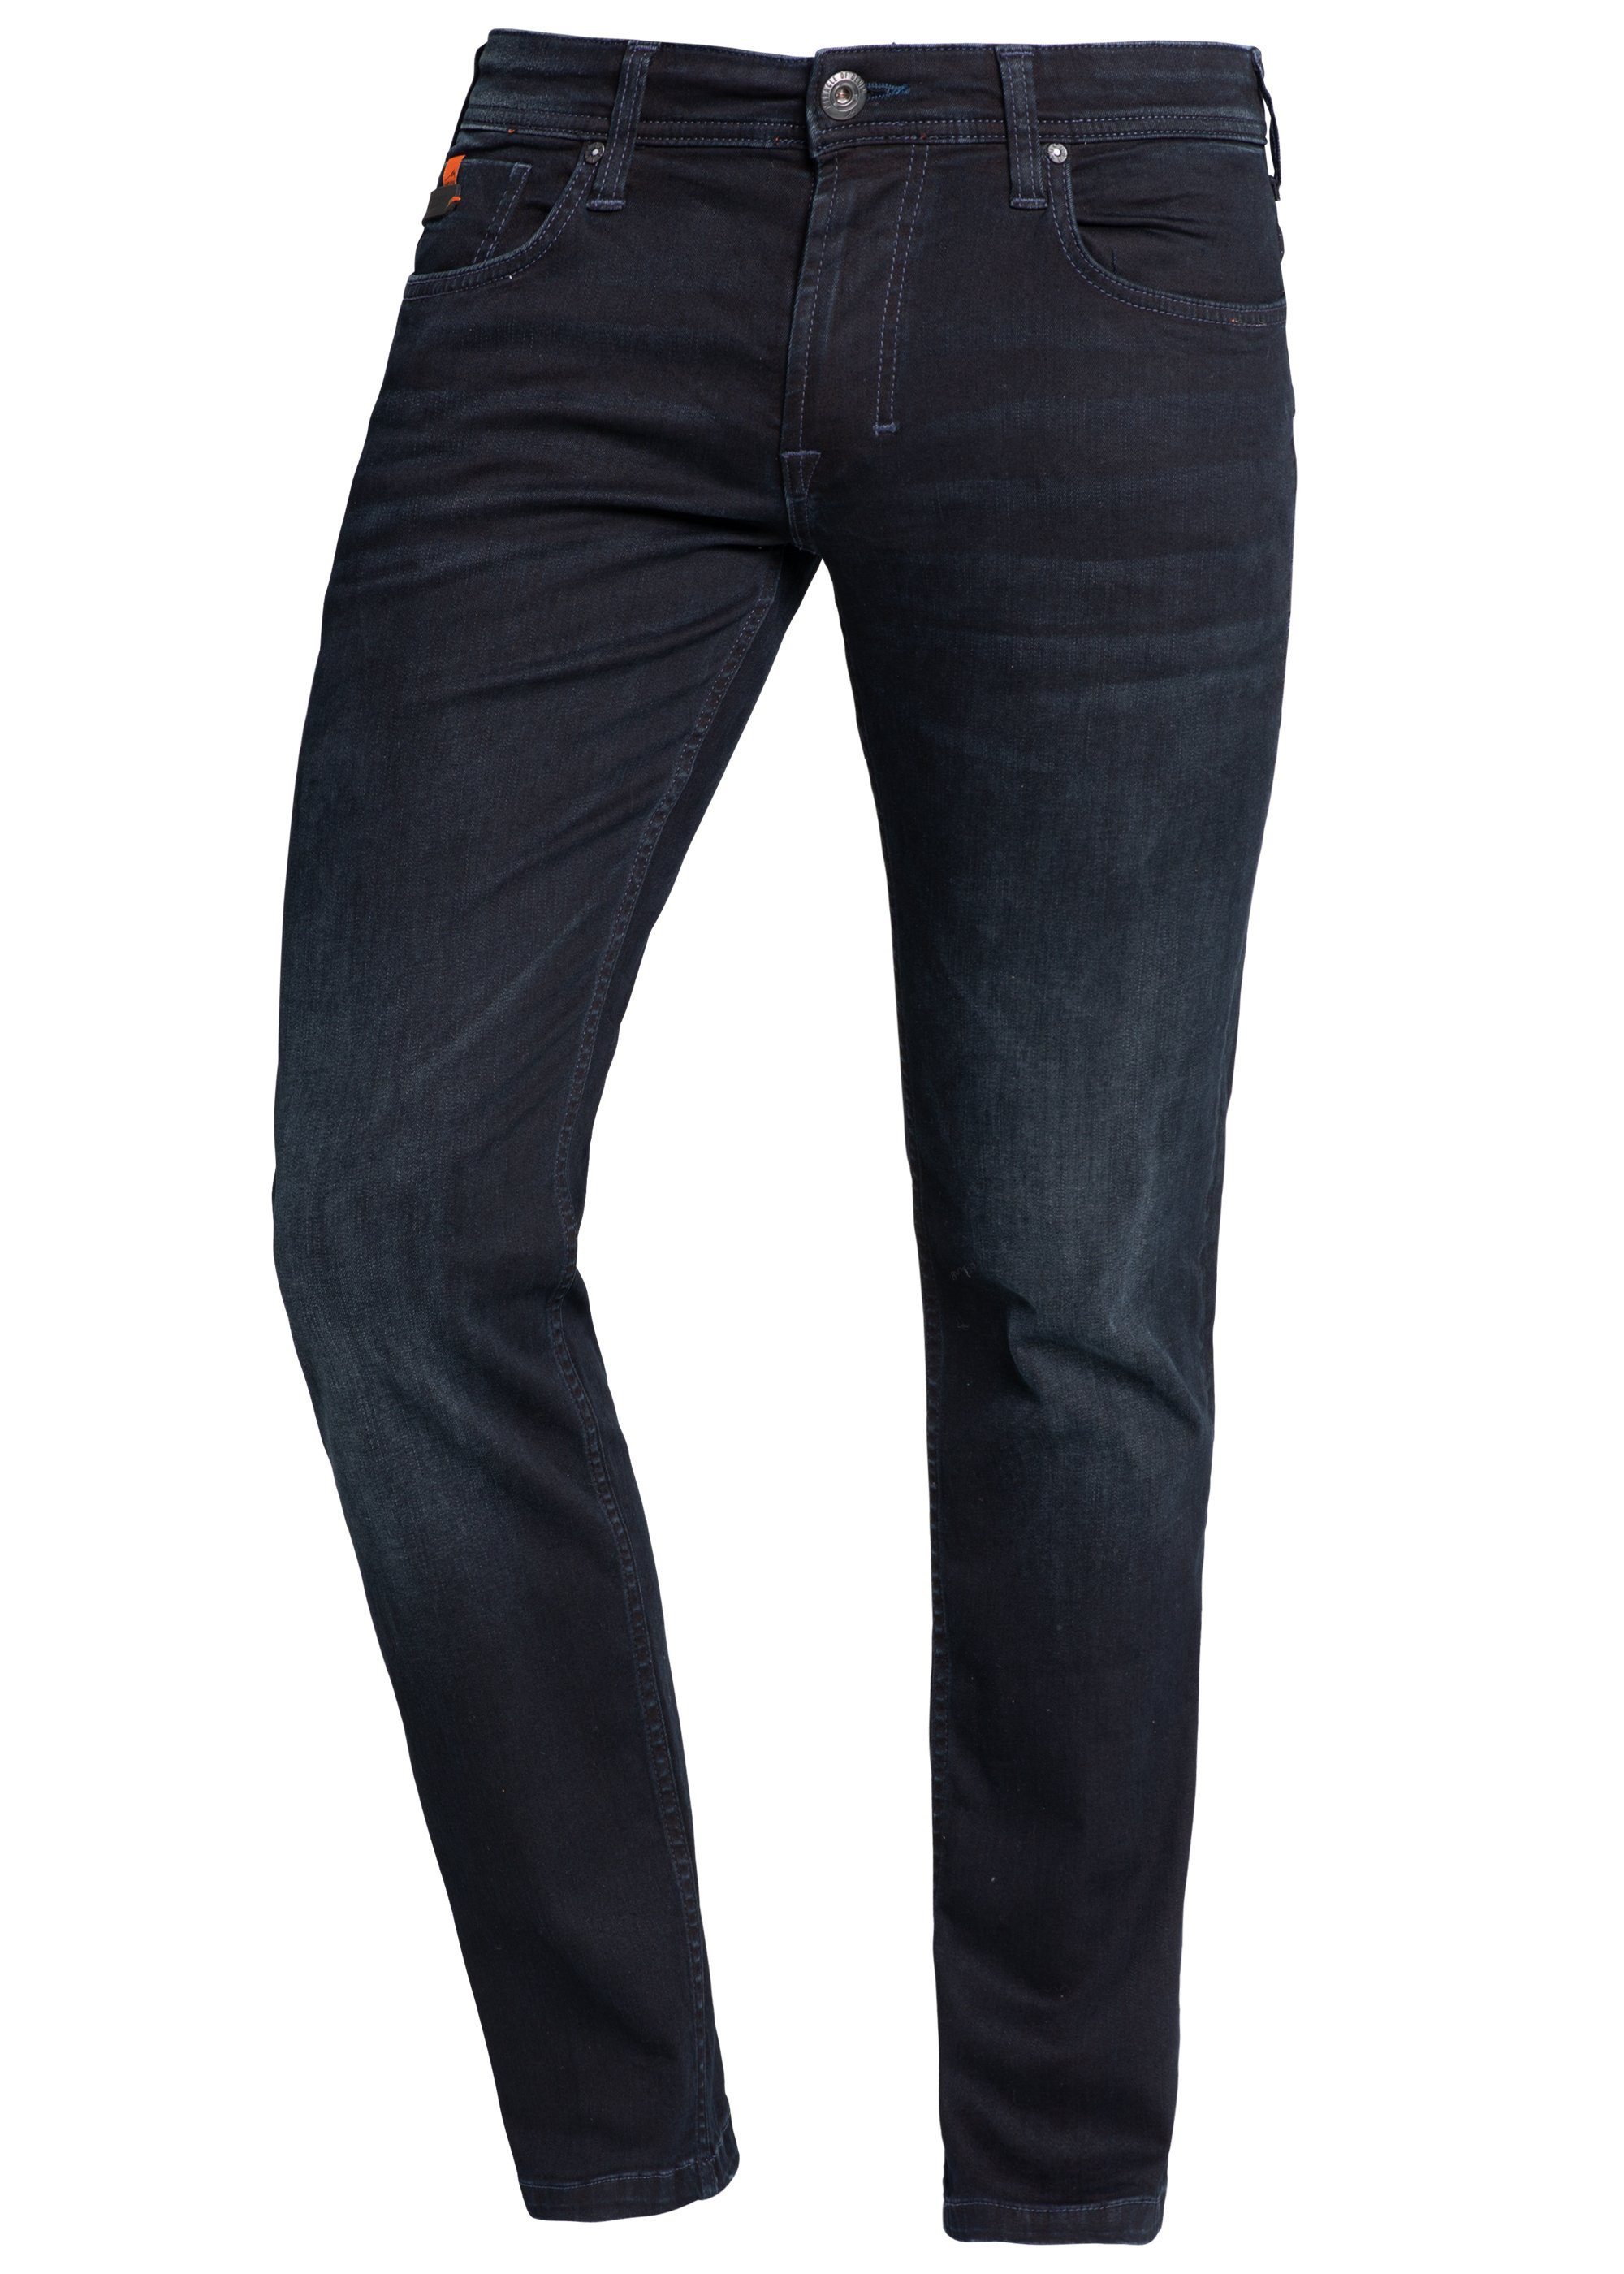 JEANS Miracle 5-Pocket-Jeans Denim AU19-1009.2961 numado blue THOMAS MOD NOS of